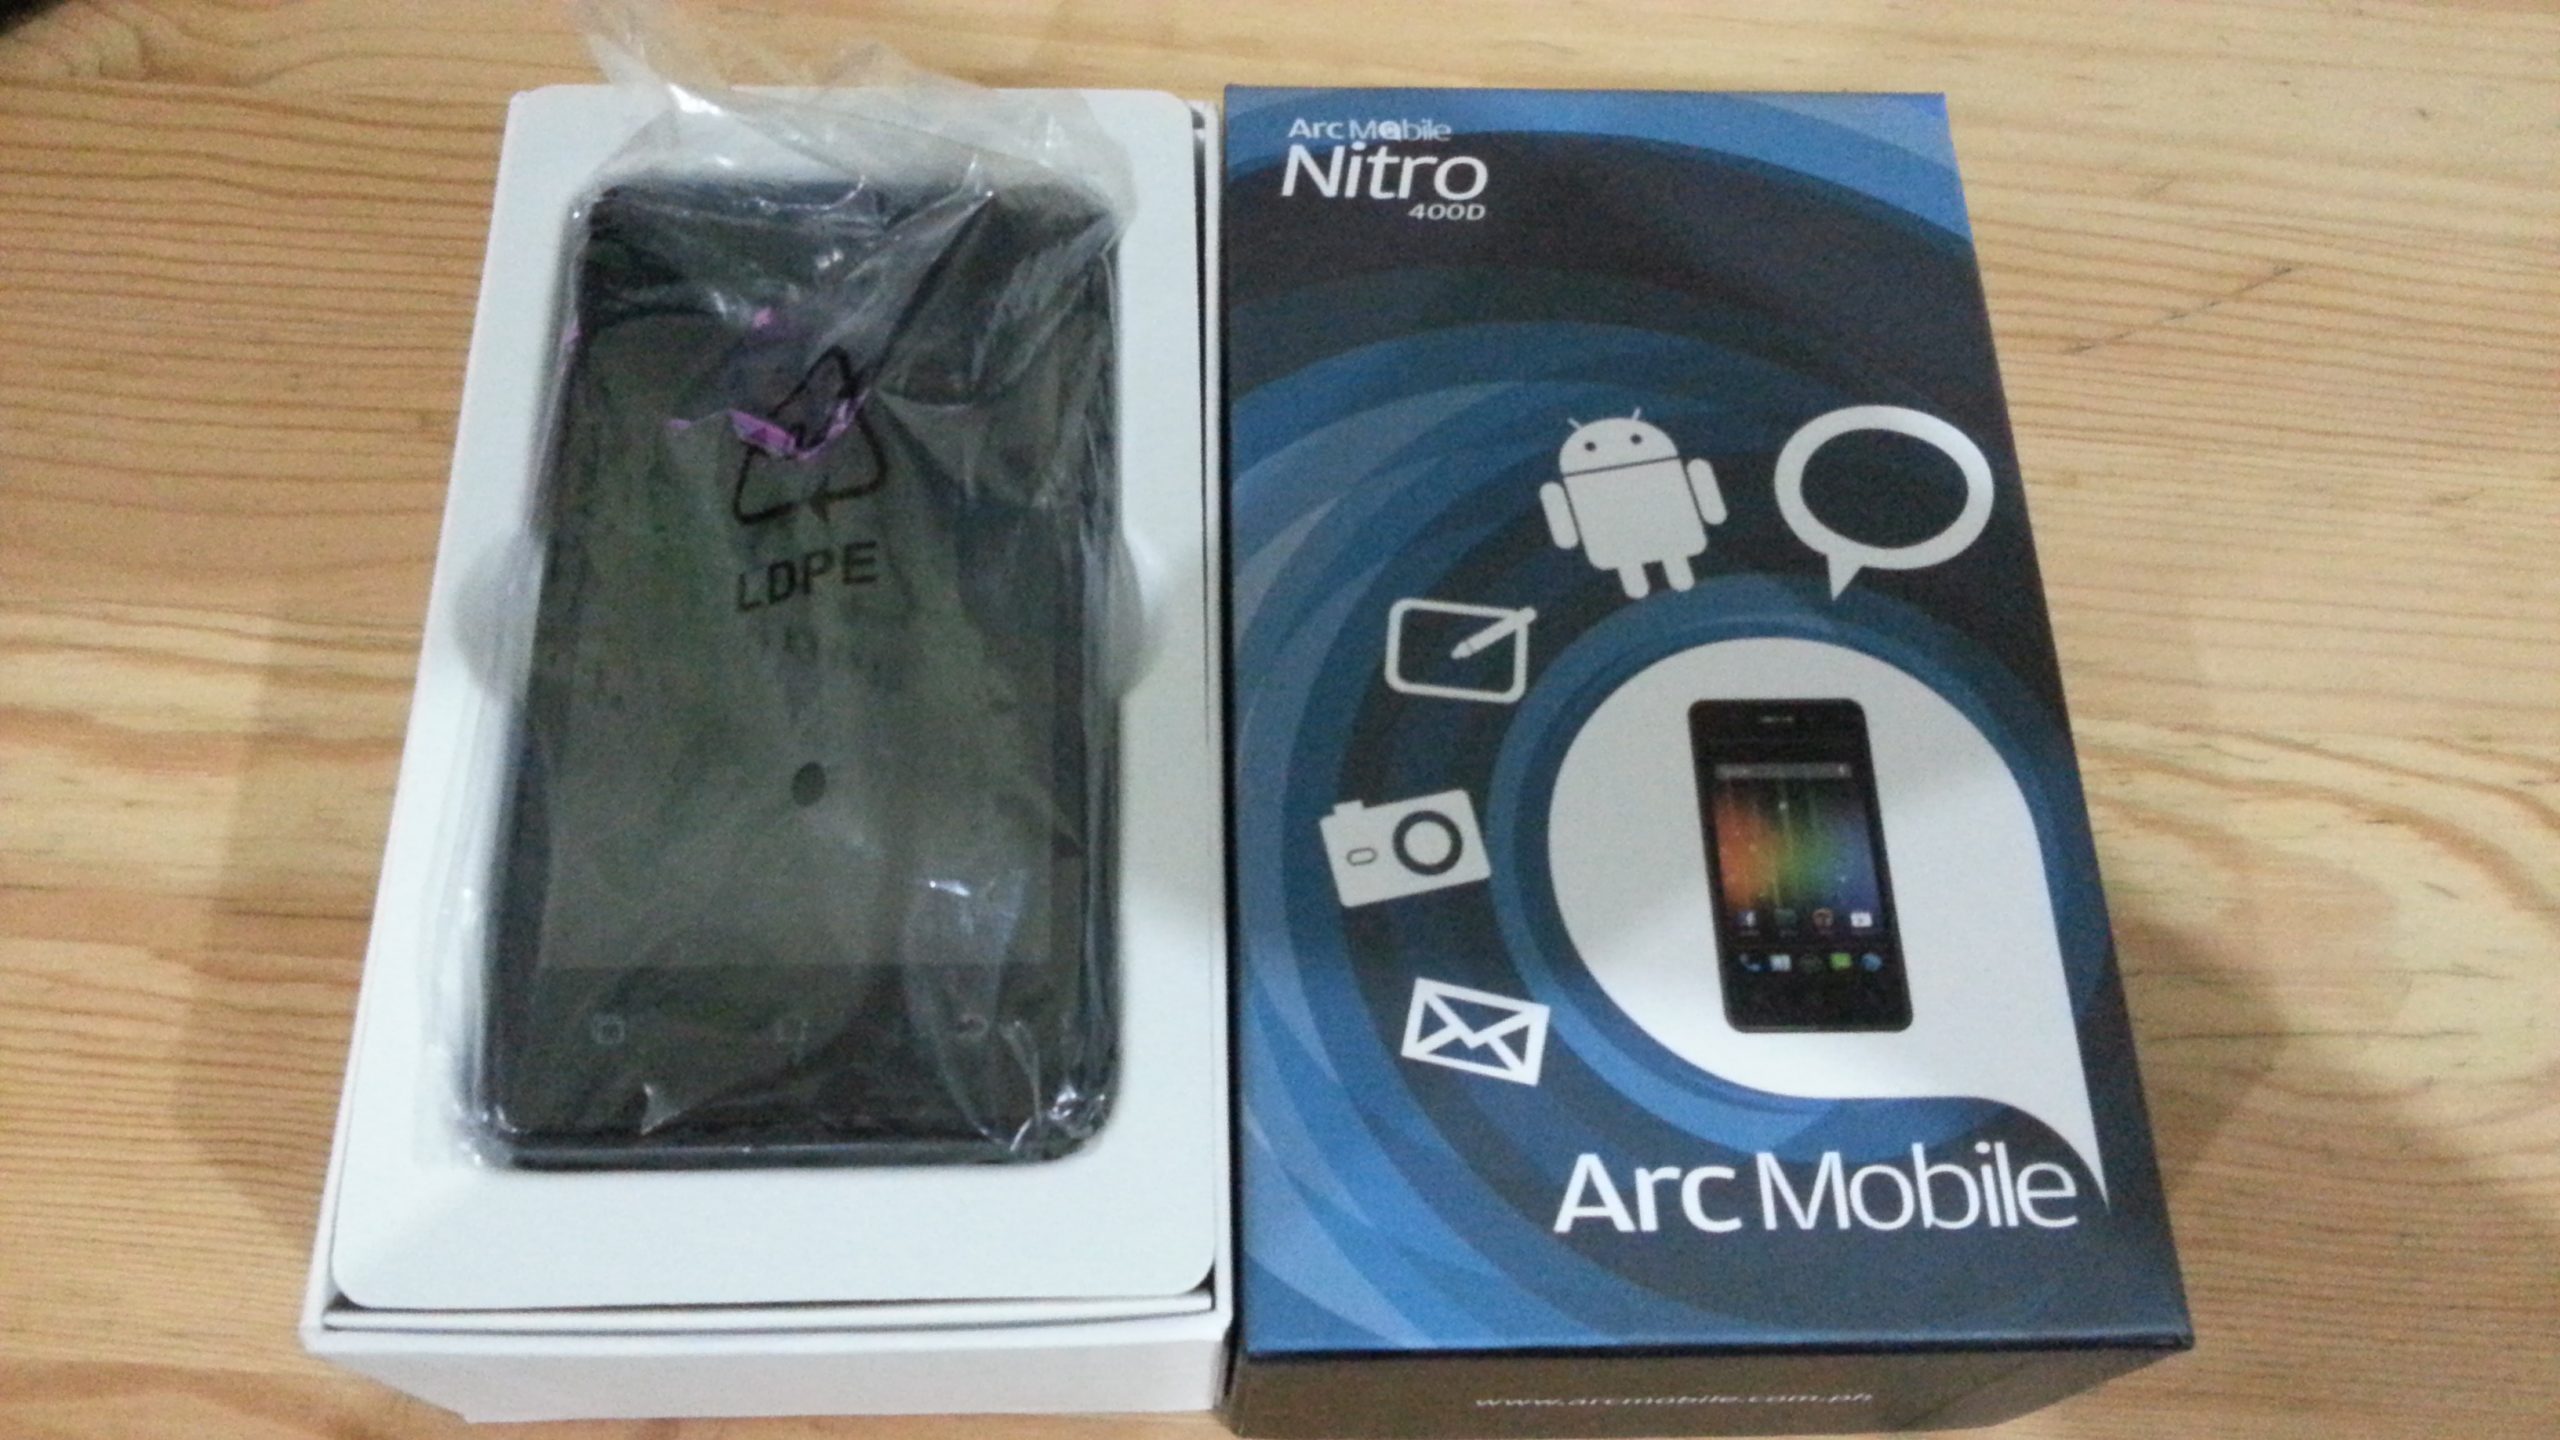 Arc Mobile Nitro 400D Review